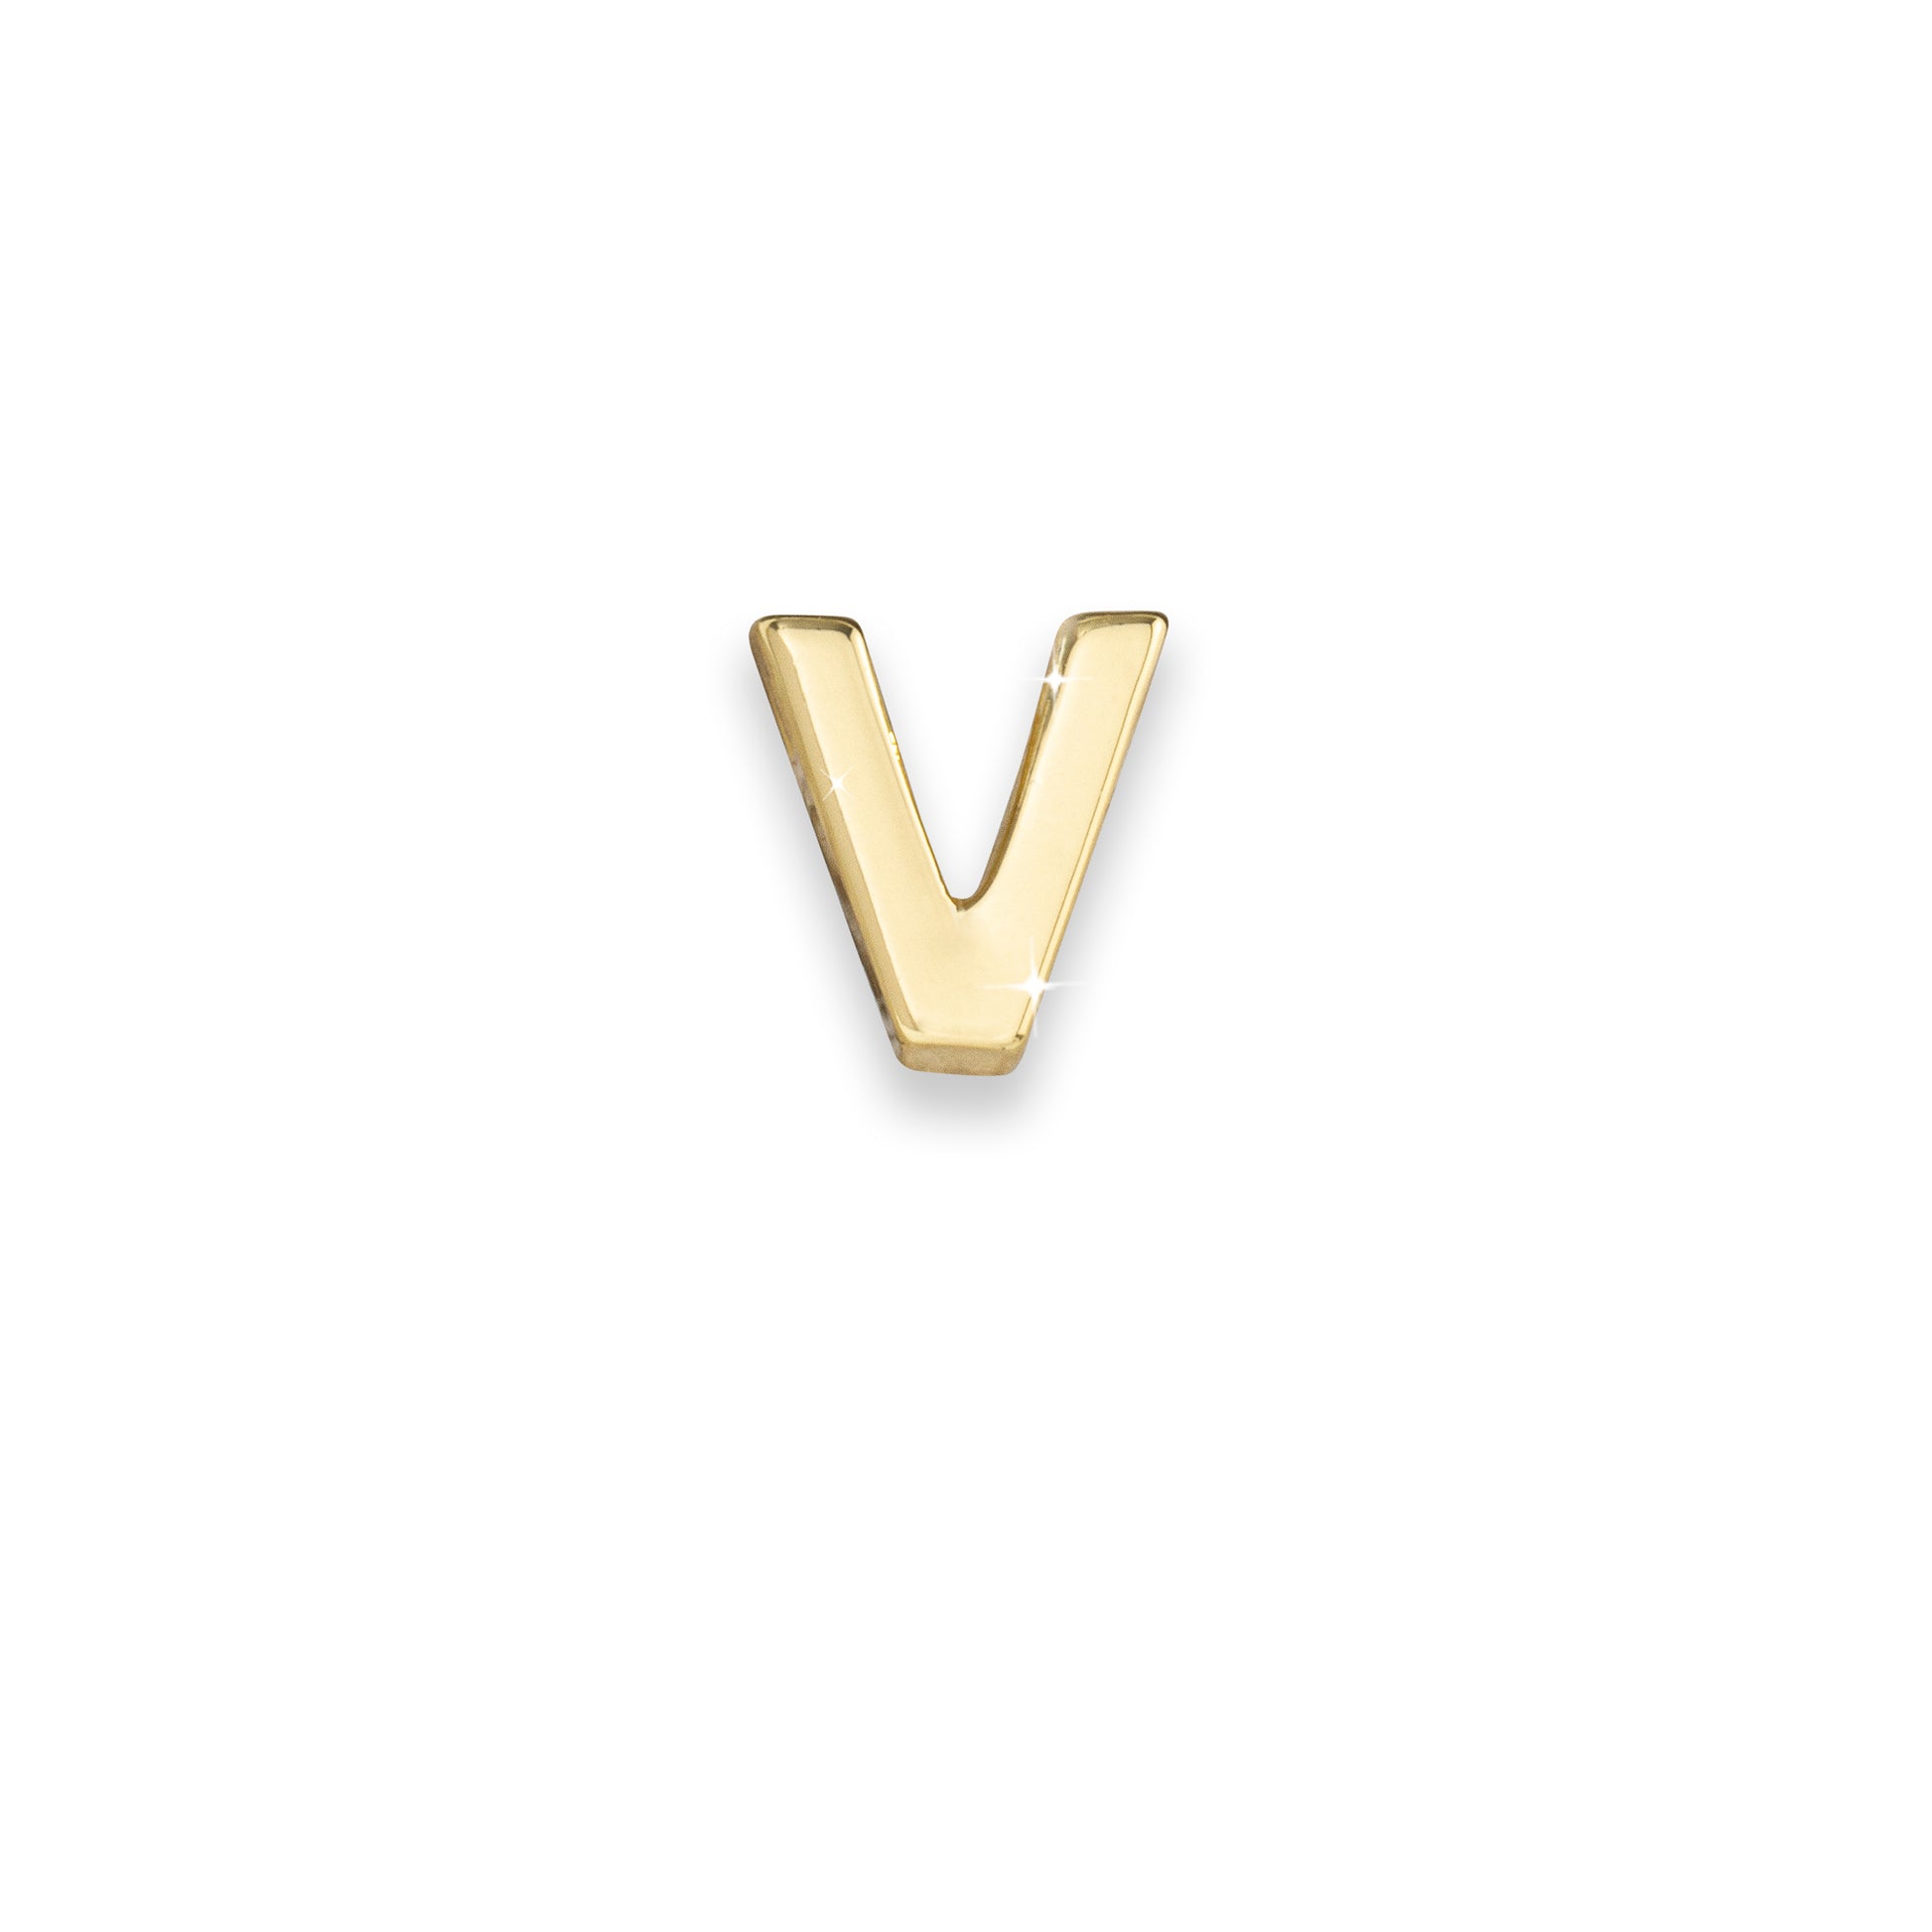 Gold letter V monogram charm for necklaces & bracelets